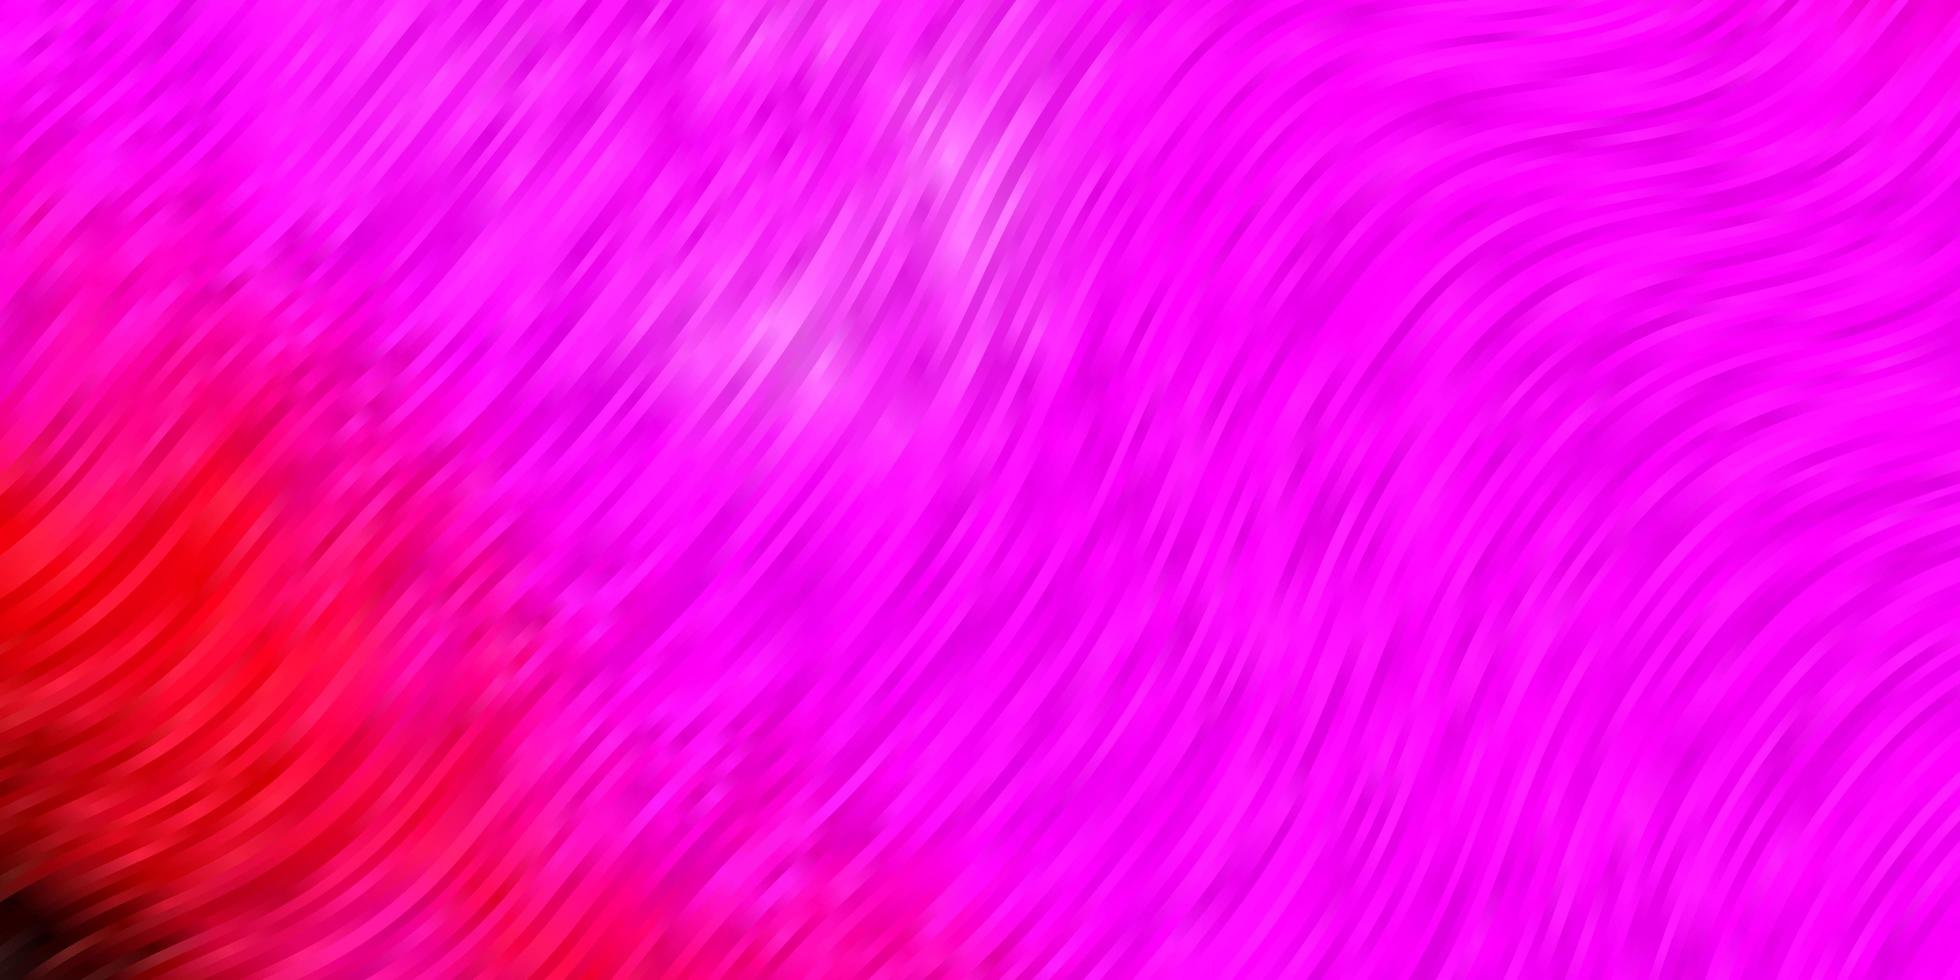 pano de fundo vector roxo, rosa escuro com linhas dobradas.